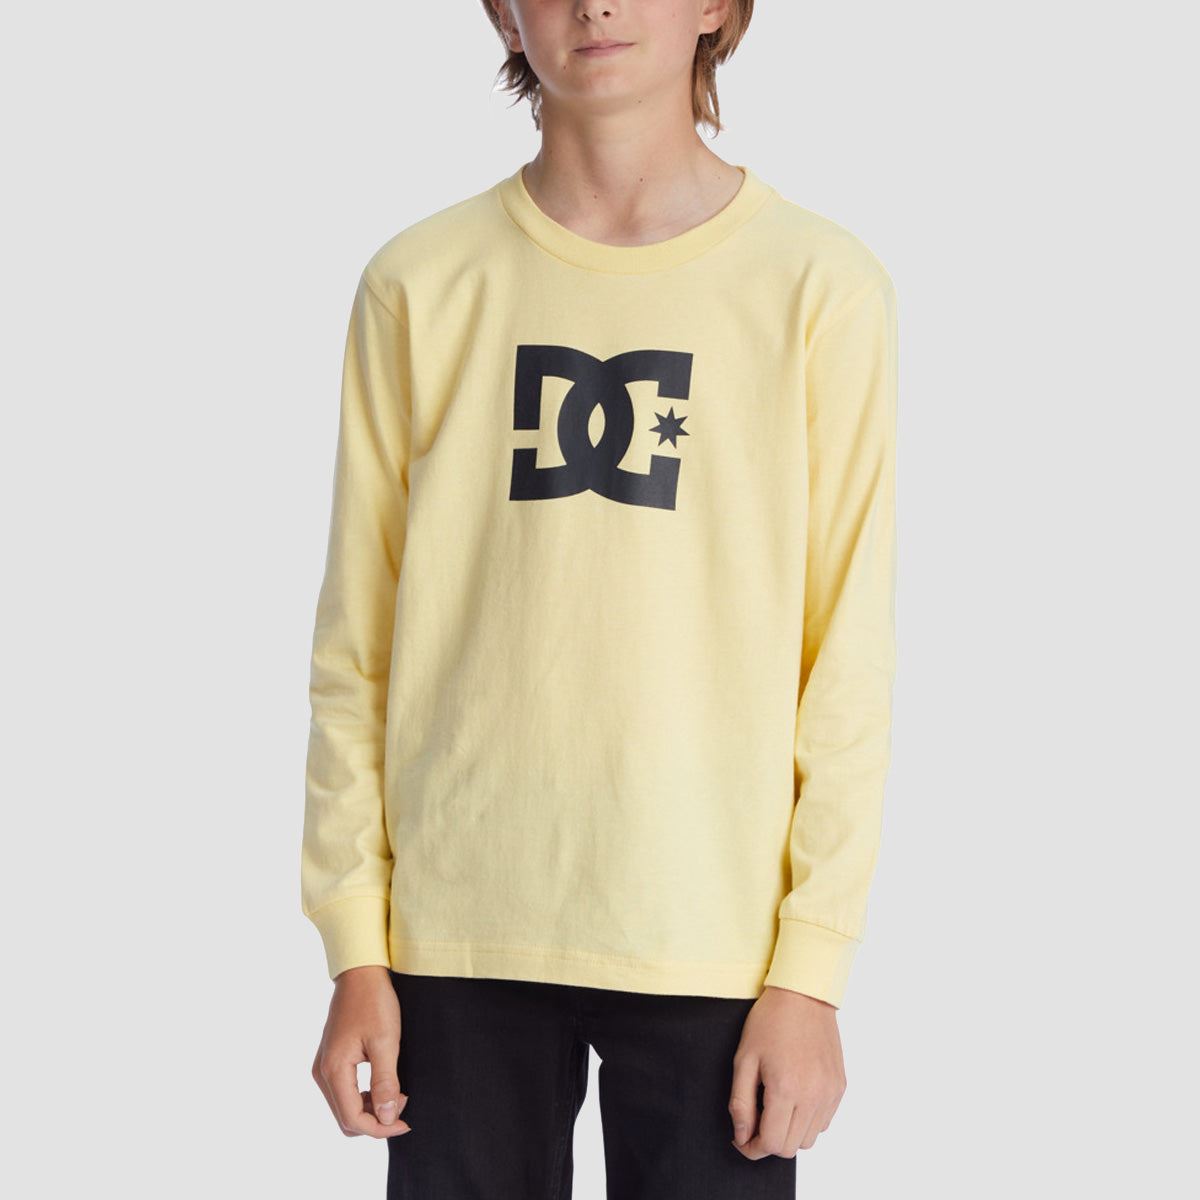 DC Star Longsleeve T-Shirt Pale Banana - Kids